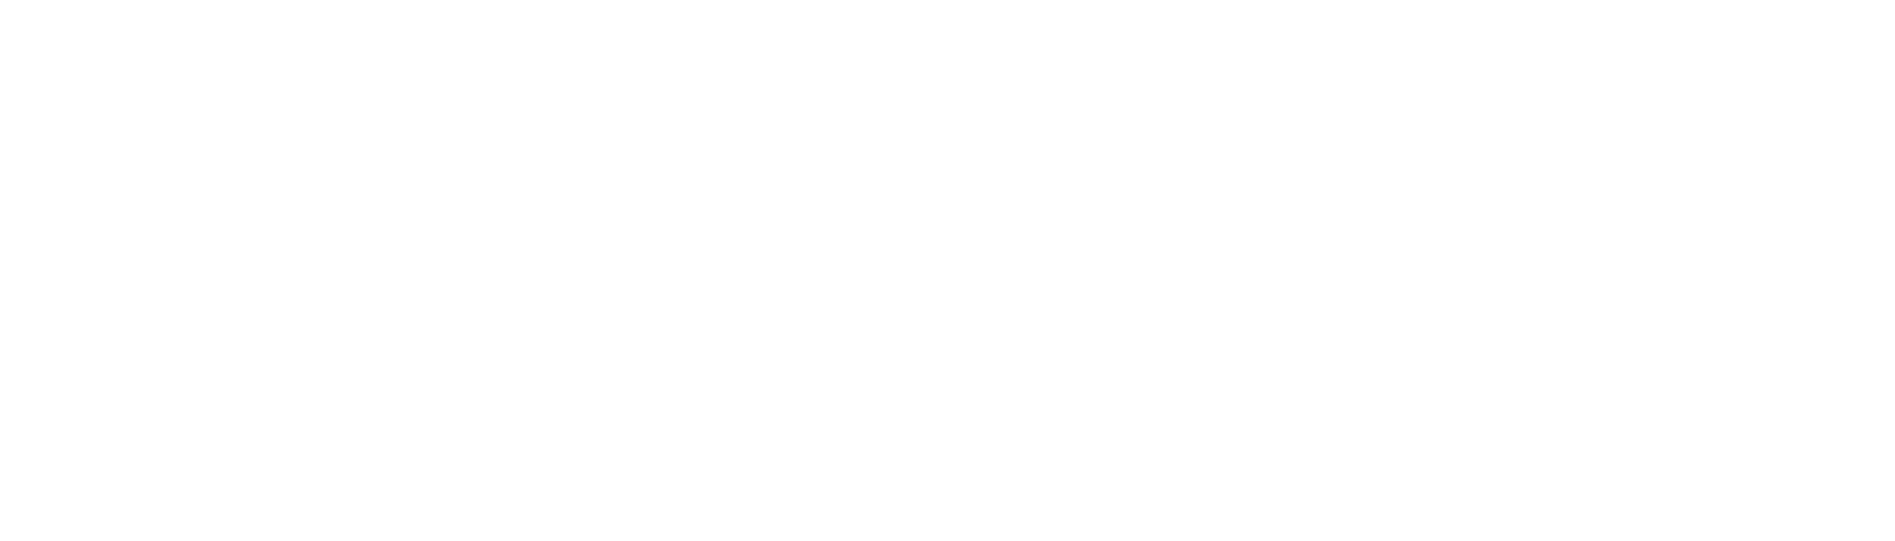 Monk Lights Logo Design PNG image